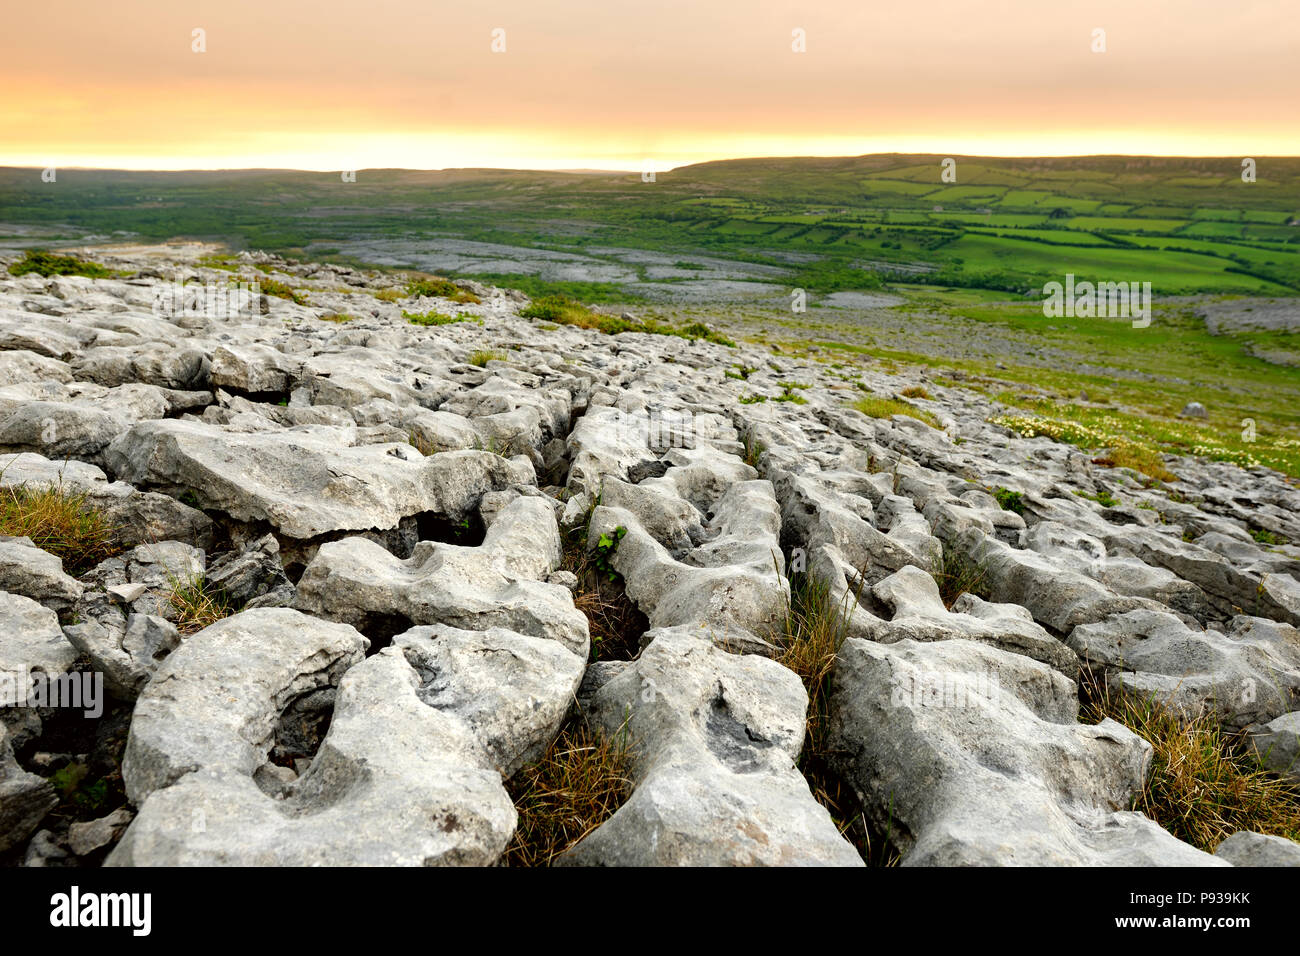 Spektakuläre Landschaft der Region Burren, County Clare, Irland. Freiliegende karst Kalkstein Grundgestein am Burren National Park. Raue irische Natur. Stockfoto